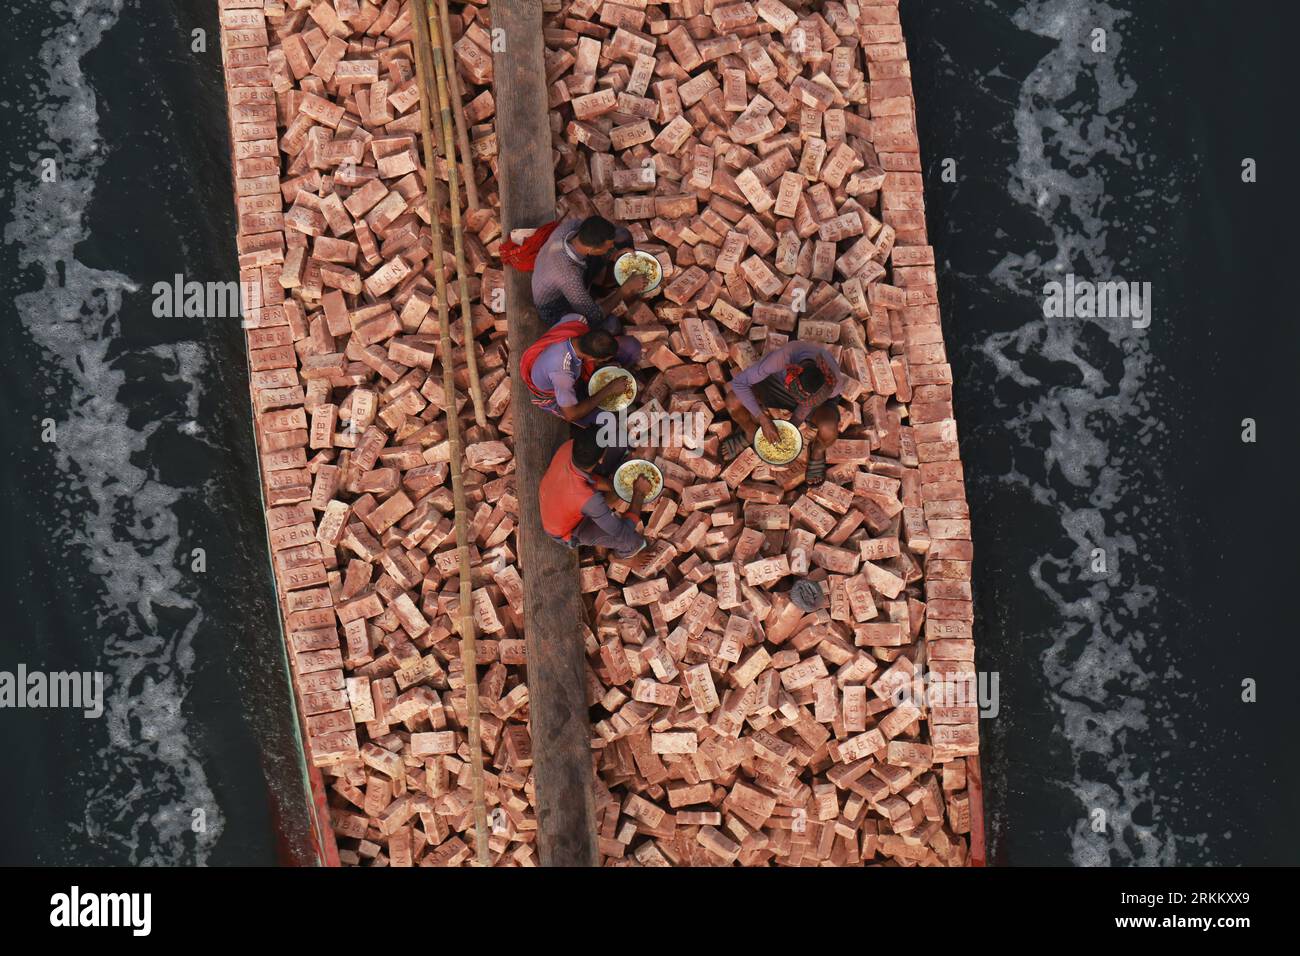 DHAKA, BANGLADESH-25 FÉVRIER 2021 : les ouvriers prennent leur petit déjeuner sur un bateau chargé de voiles en briques sur la rivière Dhaleshwari à Keraniganj, dans la banlieue de Dhaka, Bangladesh, le 25 février 2021. Banque D'Images